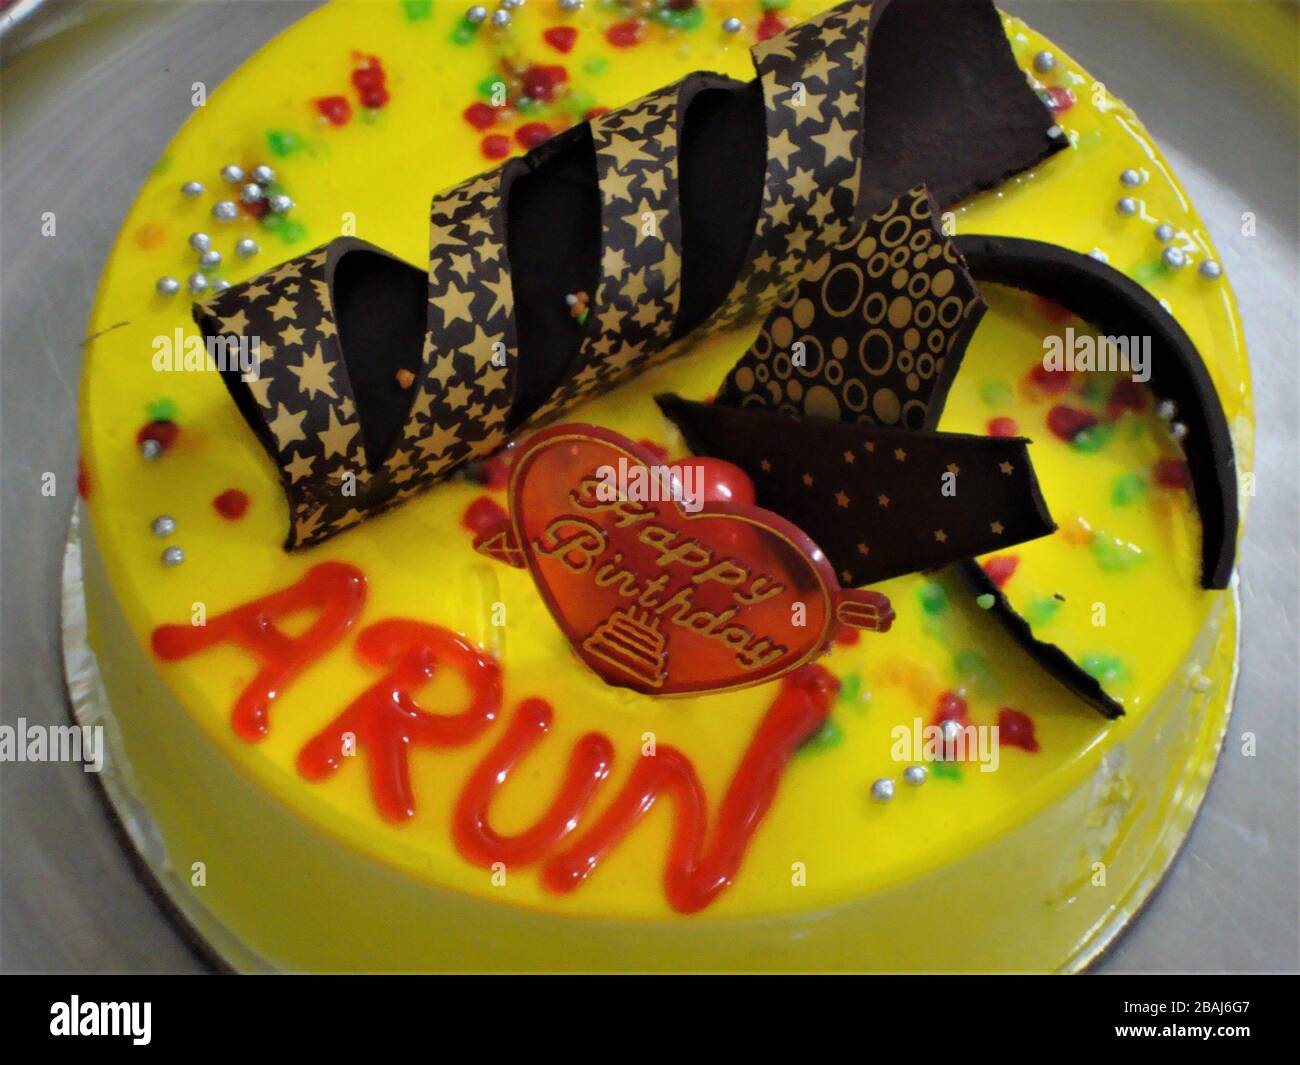 Torta di compleanno di mele di pino yummy in sapore giallo con spirale di cioccolato costellata di stelle dorate Foto Stock